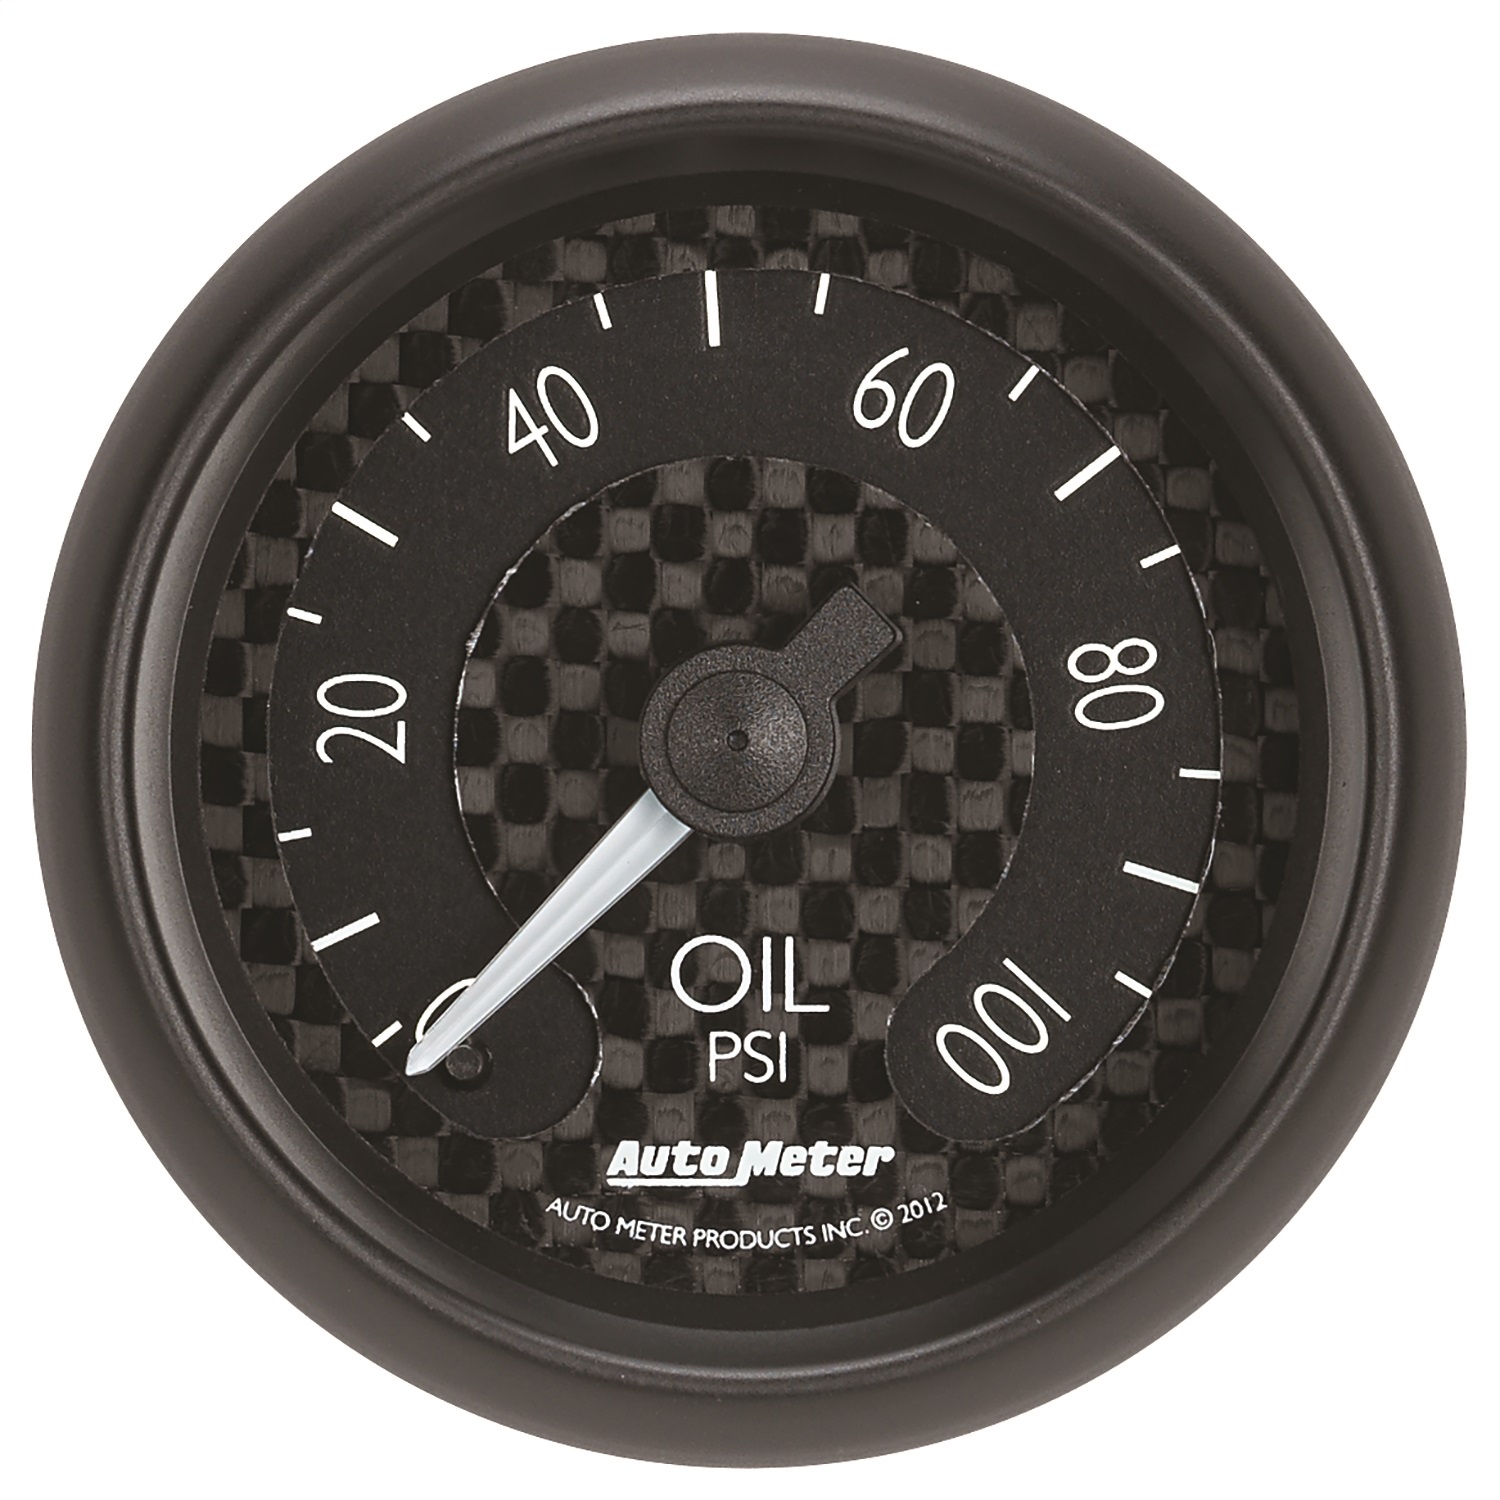 Auto Meter Auto Meter 8021 GT Series; Mechanical Oil Pressure Gauge